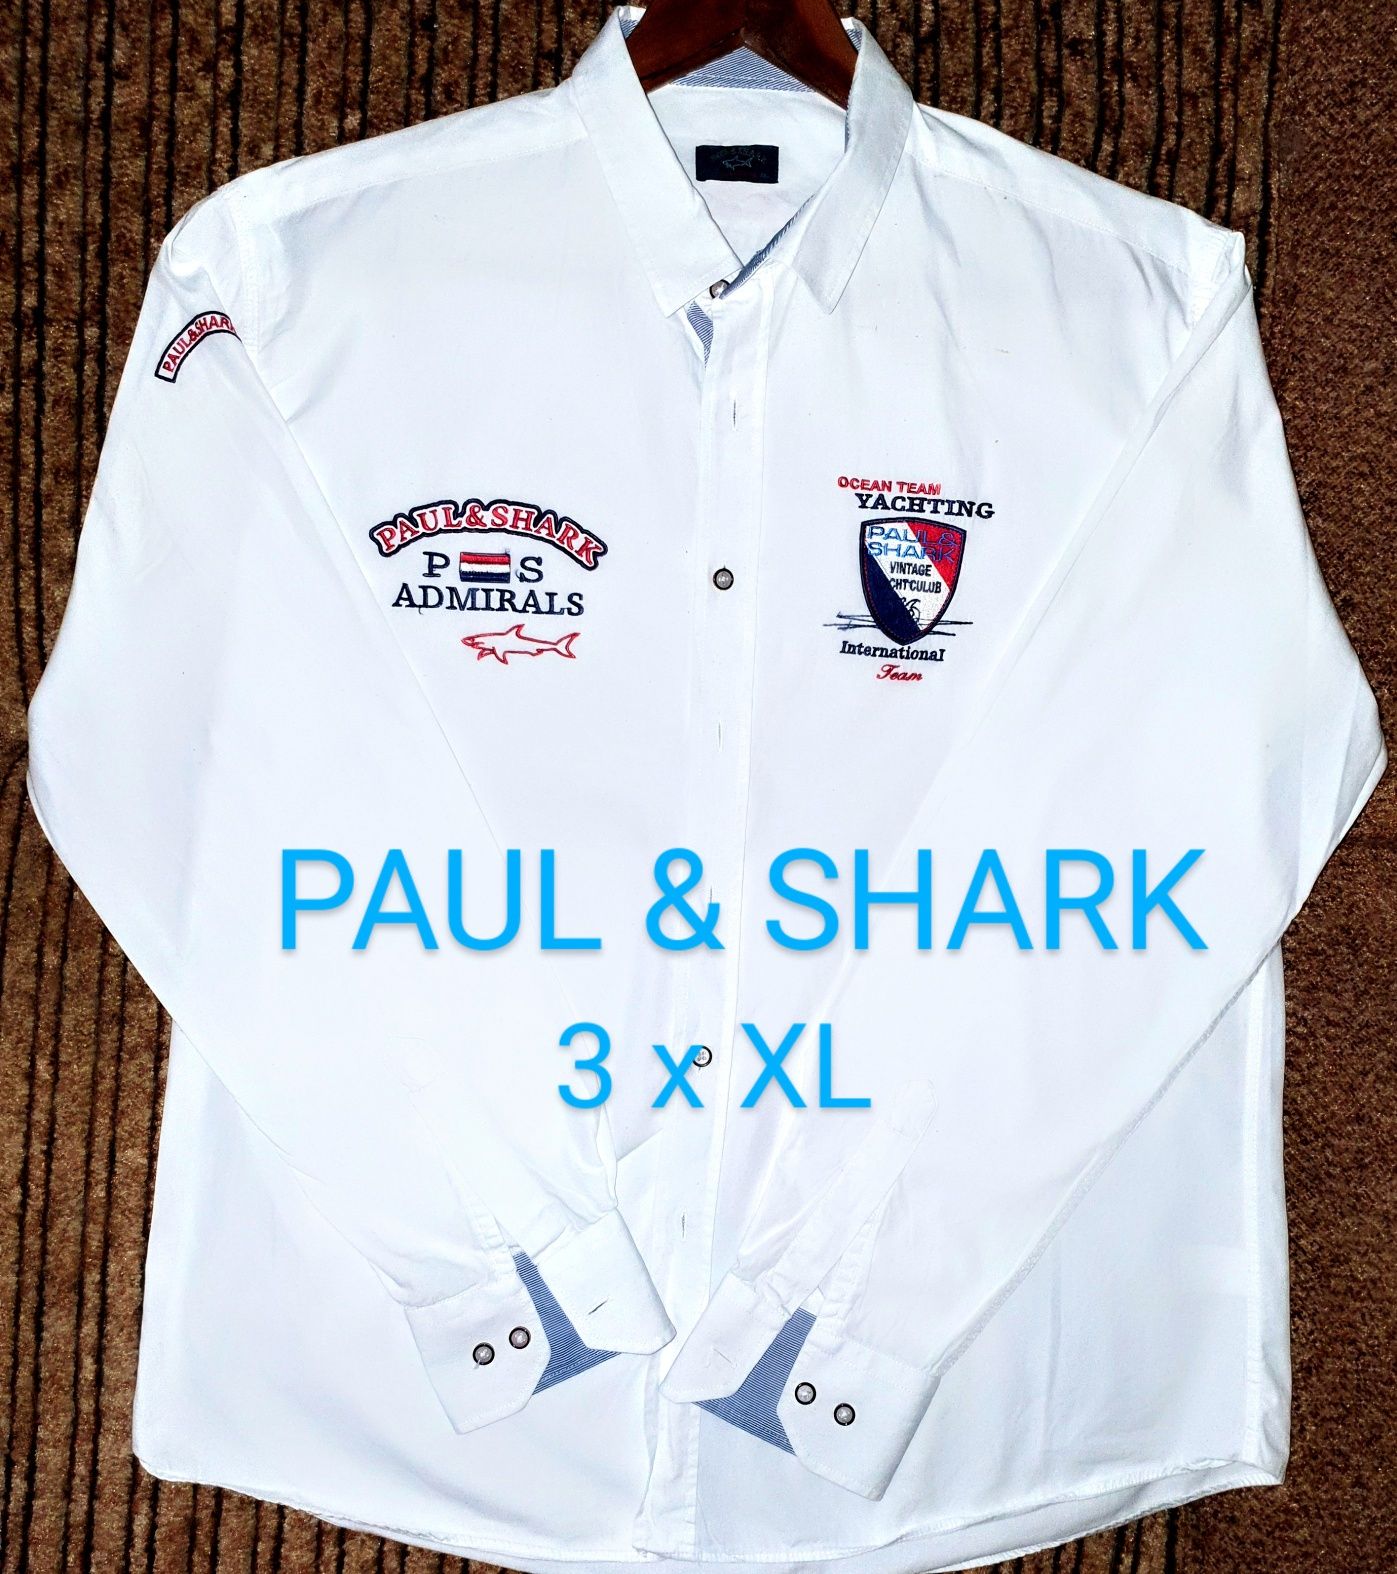 Ekskluzywna Koszula męska Paul&Shark 3 XL cena sklepowa to ponad 1000